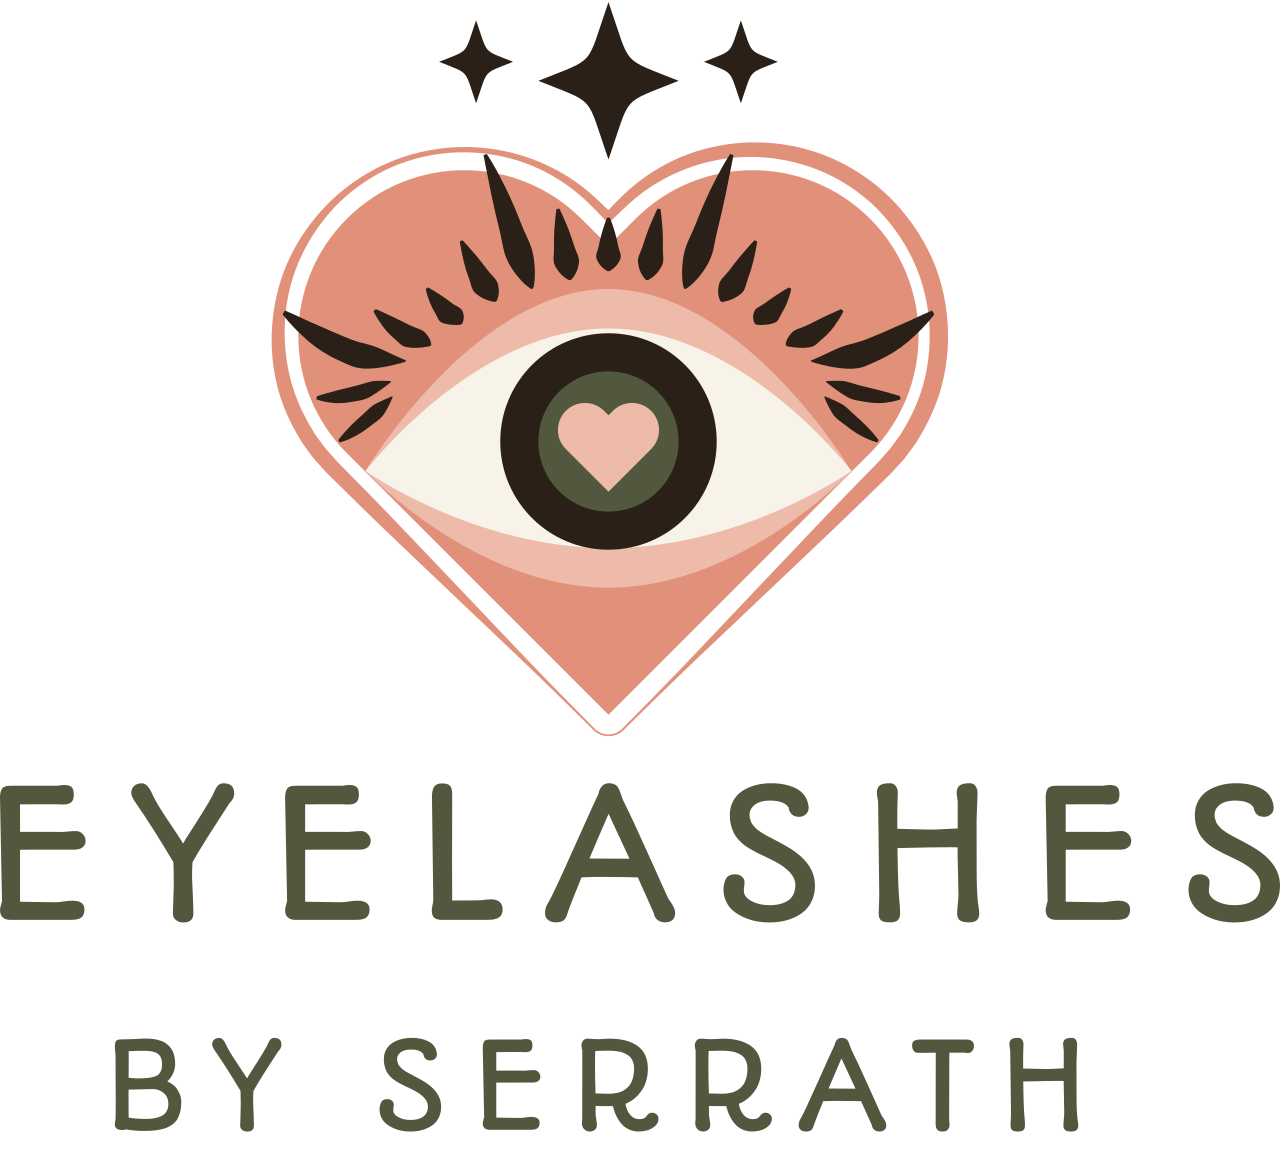 eyeLashes
's logo